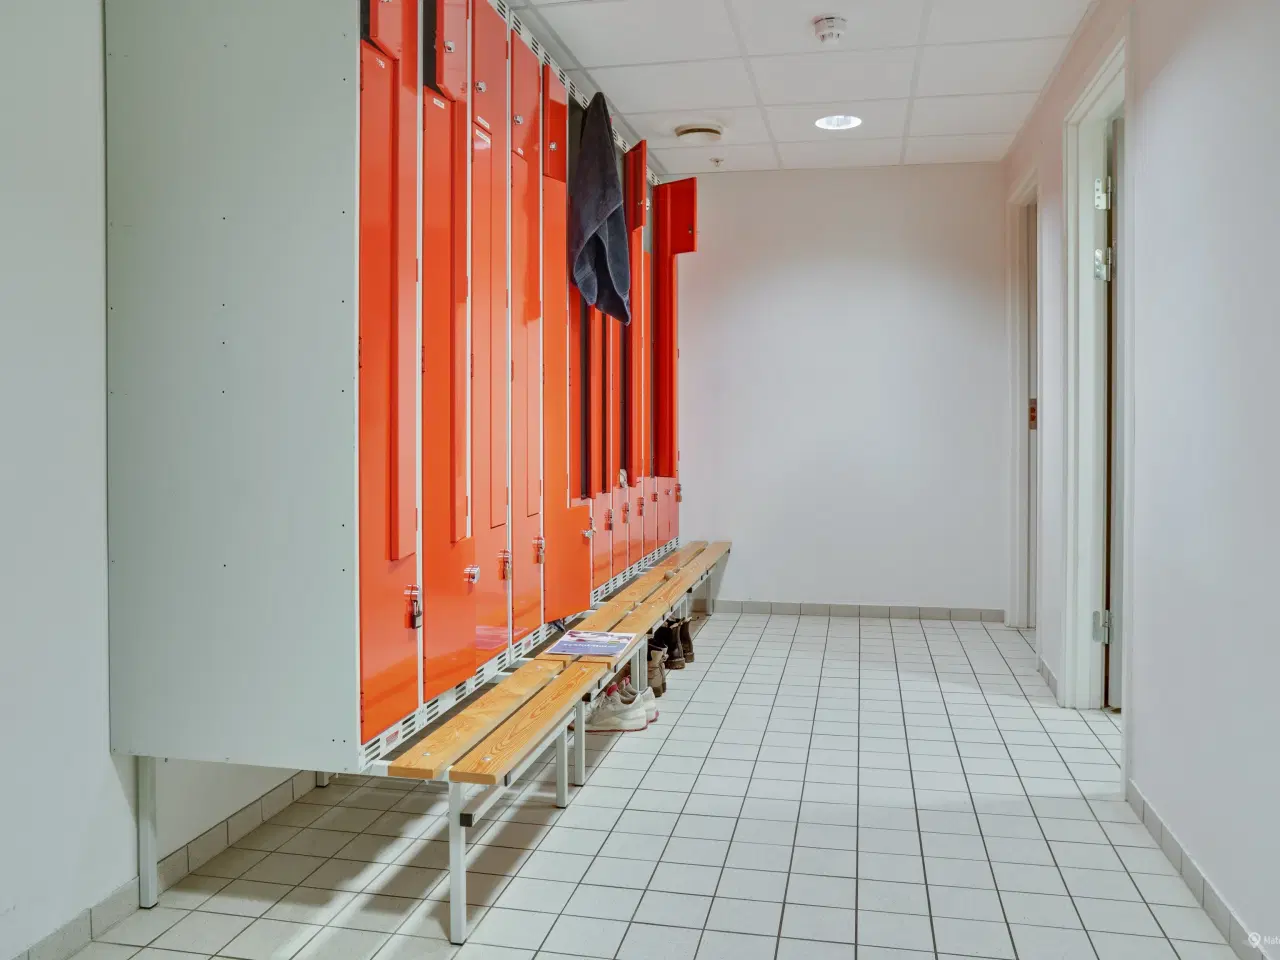 Billede 7 - Kliniklokaler/behandlerrum i moderne Sundhedshus Brøndby